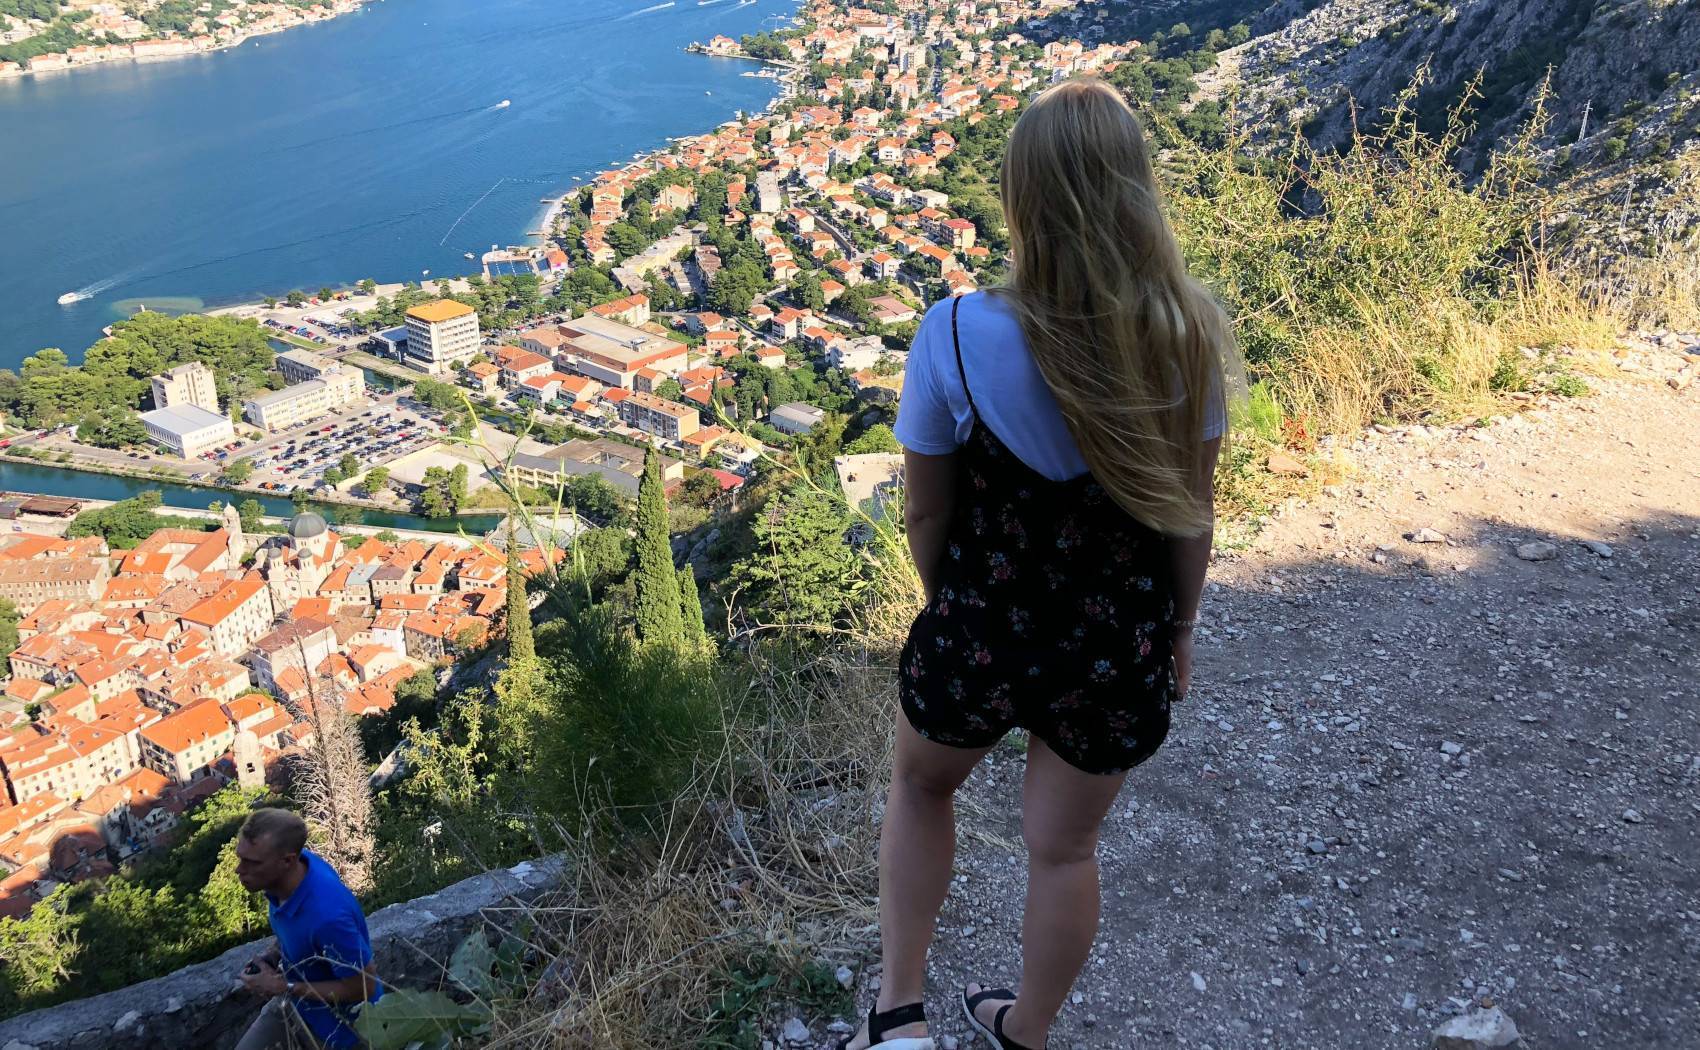 Работа в черногории: как найти и устроиться? - живи, путешествуй, работай! - блог про путешествия, работу, семью, жизнь, хобби, спорт ...